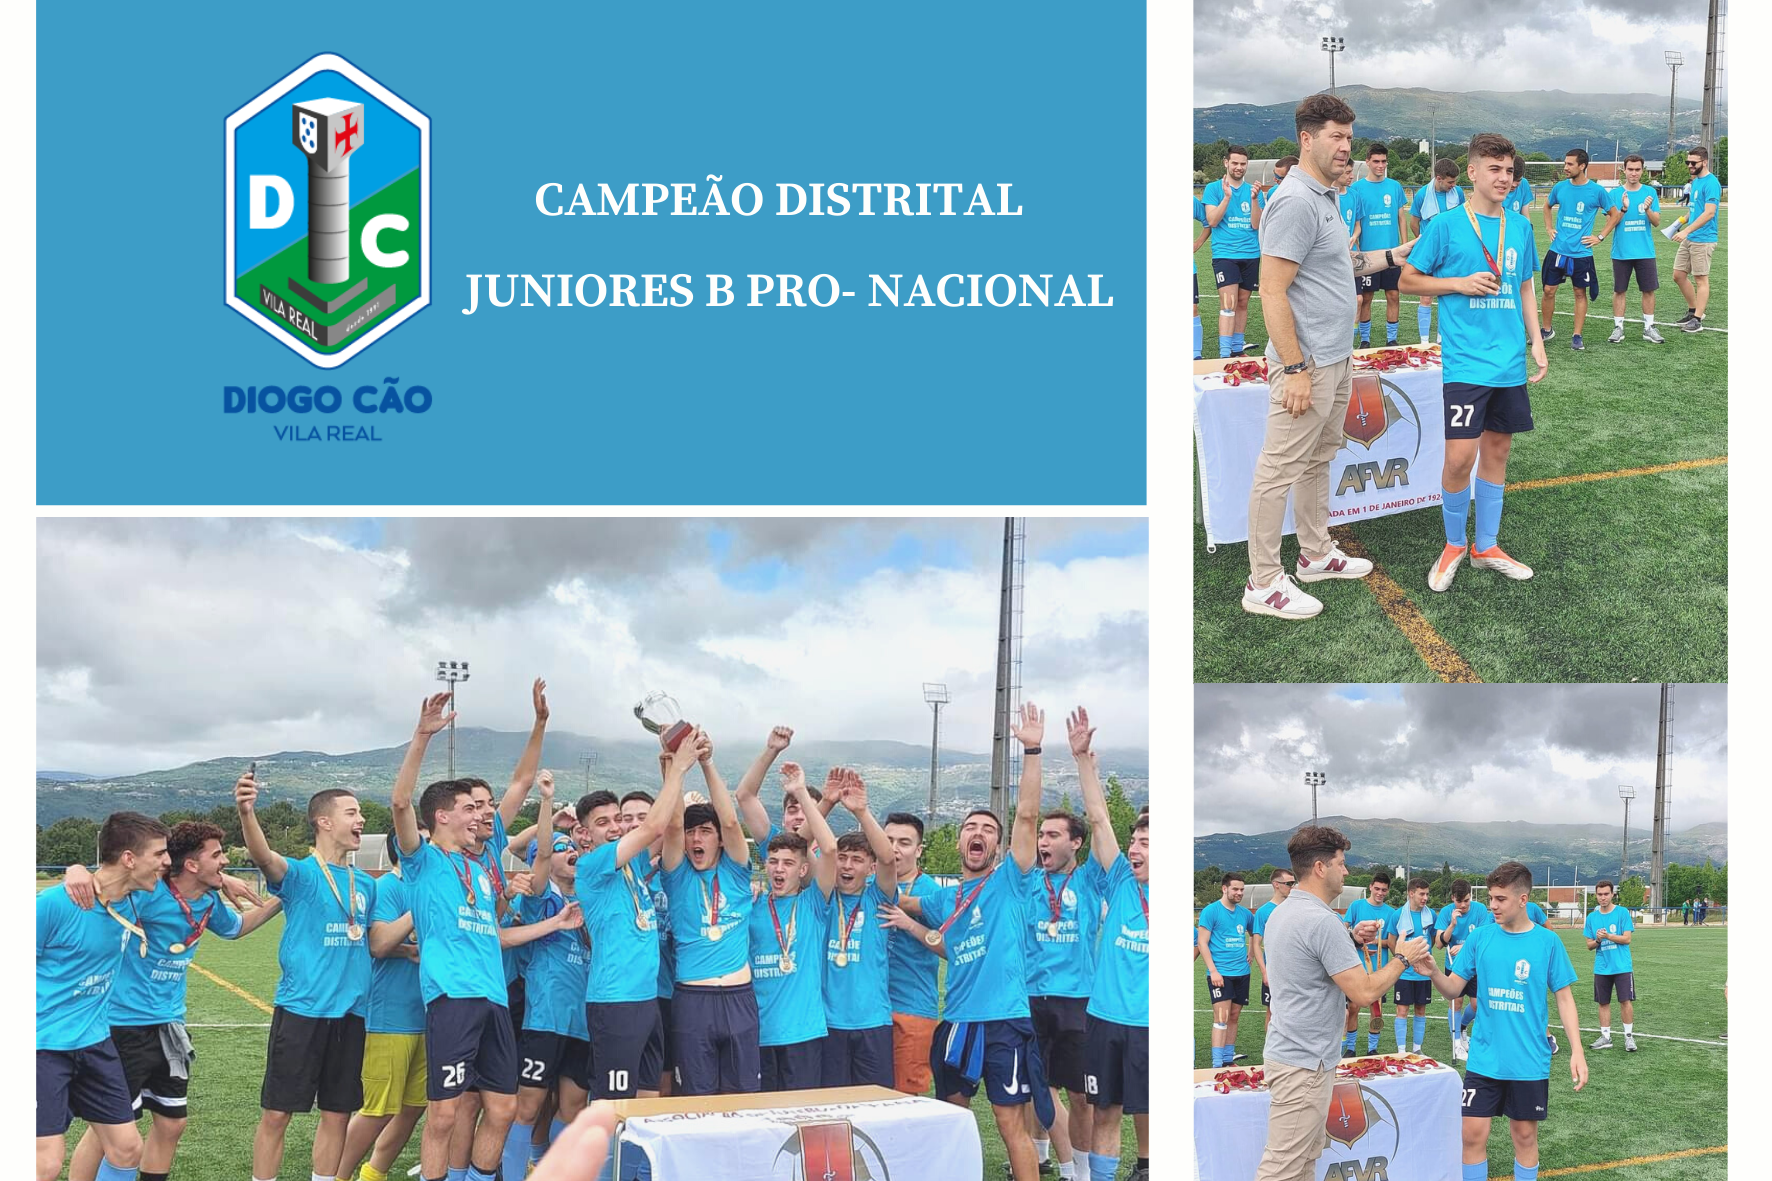 ADC Escola Diogo Cão | Campeão Distrital Juniores B Pro-Nacional